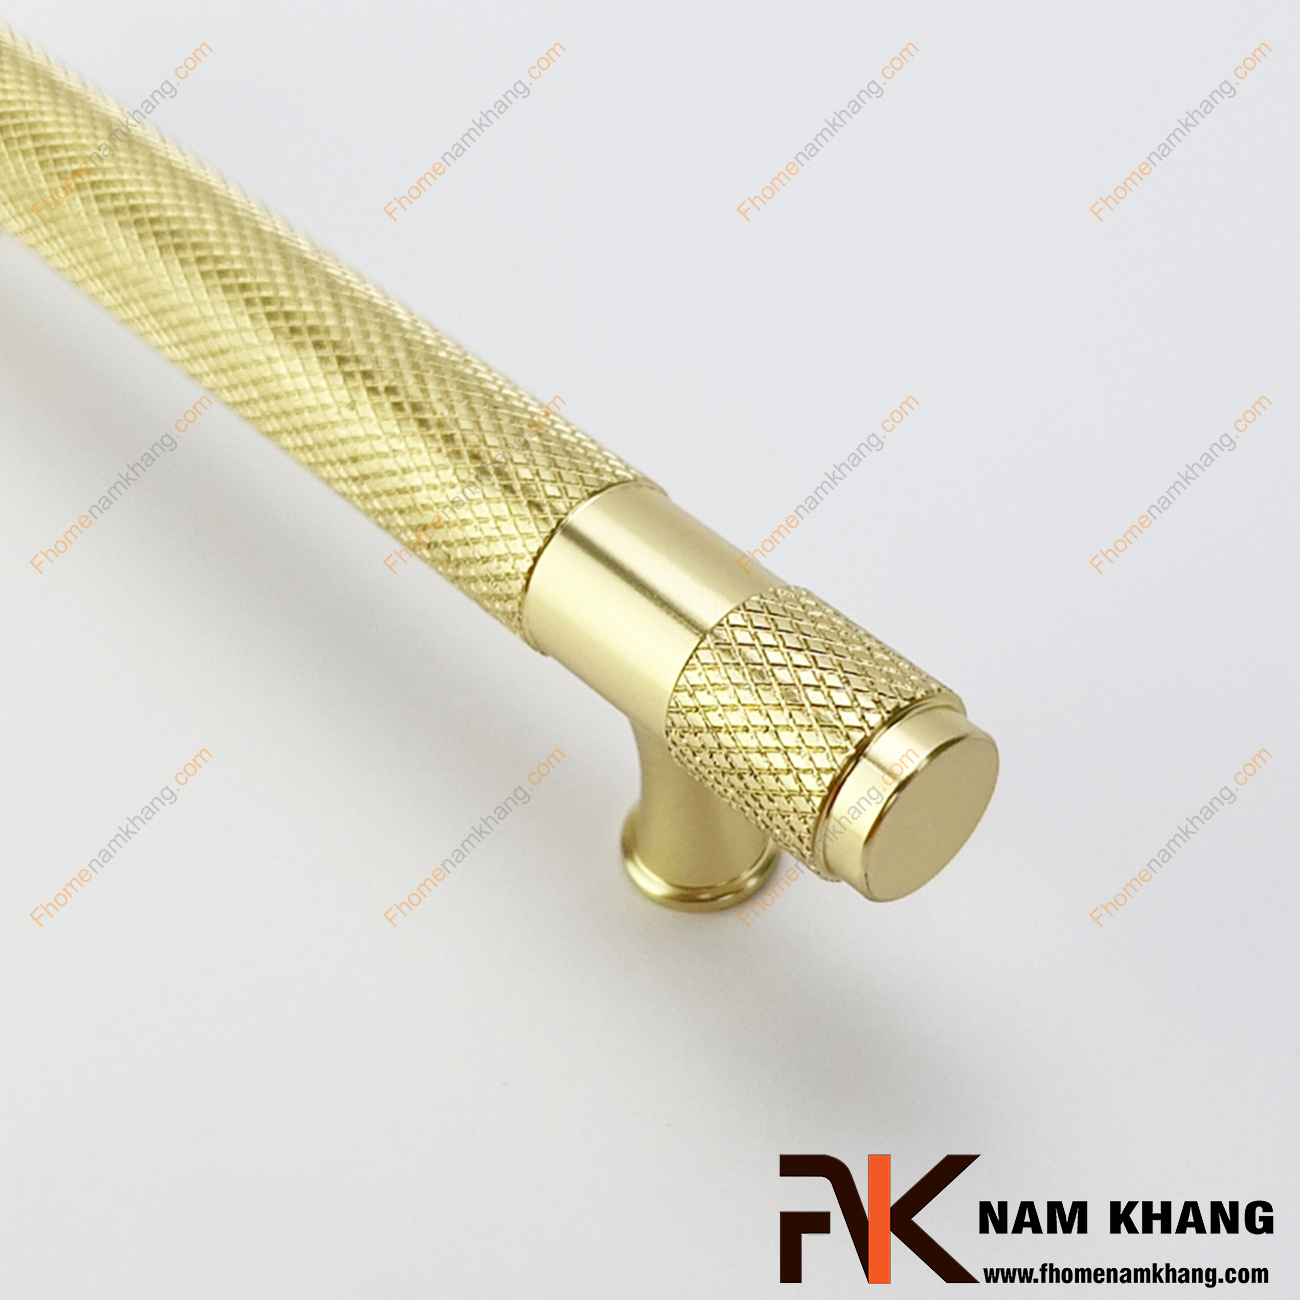 Tay nắm tủ thanh tròn màu vàng NK207S-V có thiết kế khá đặc biệt và thu hút khi kết hợp chân đến tròn mạ vàng bóng phối hợp với phần thân là một ống tròn từ chất liệu hợp kim bền chắc.